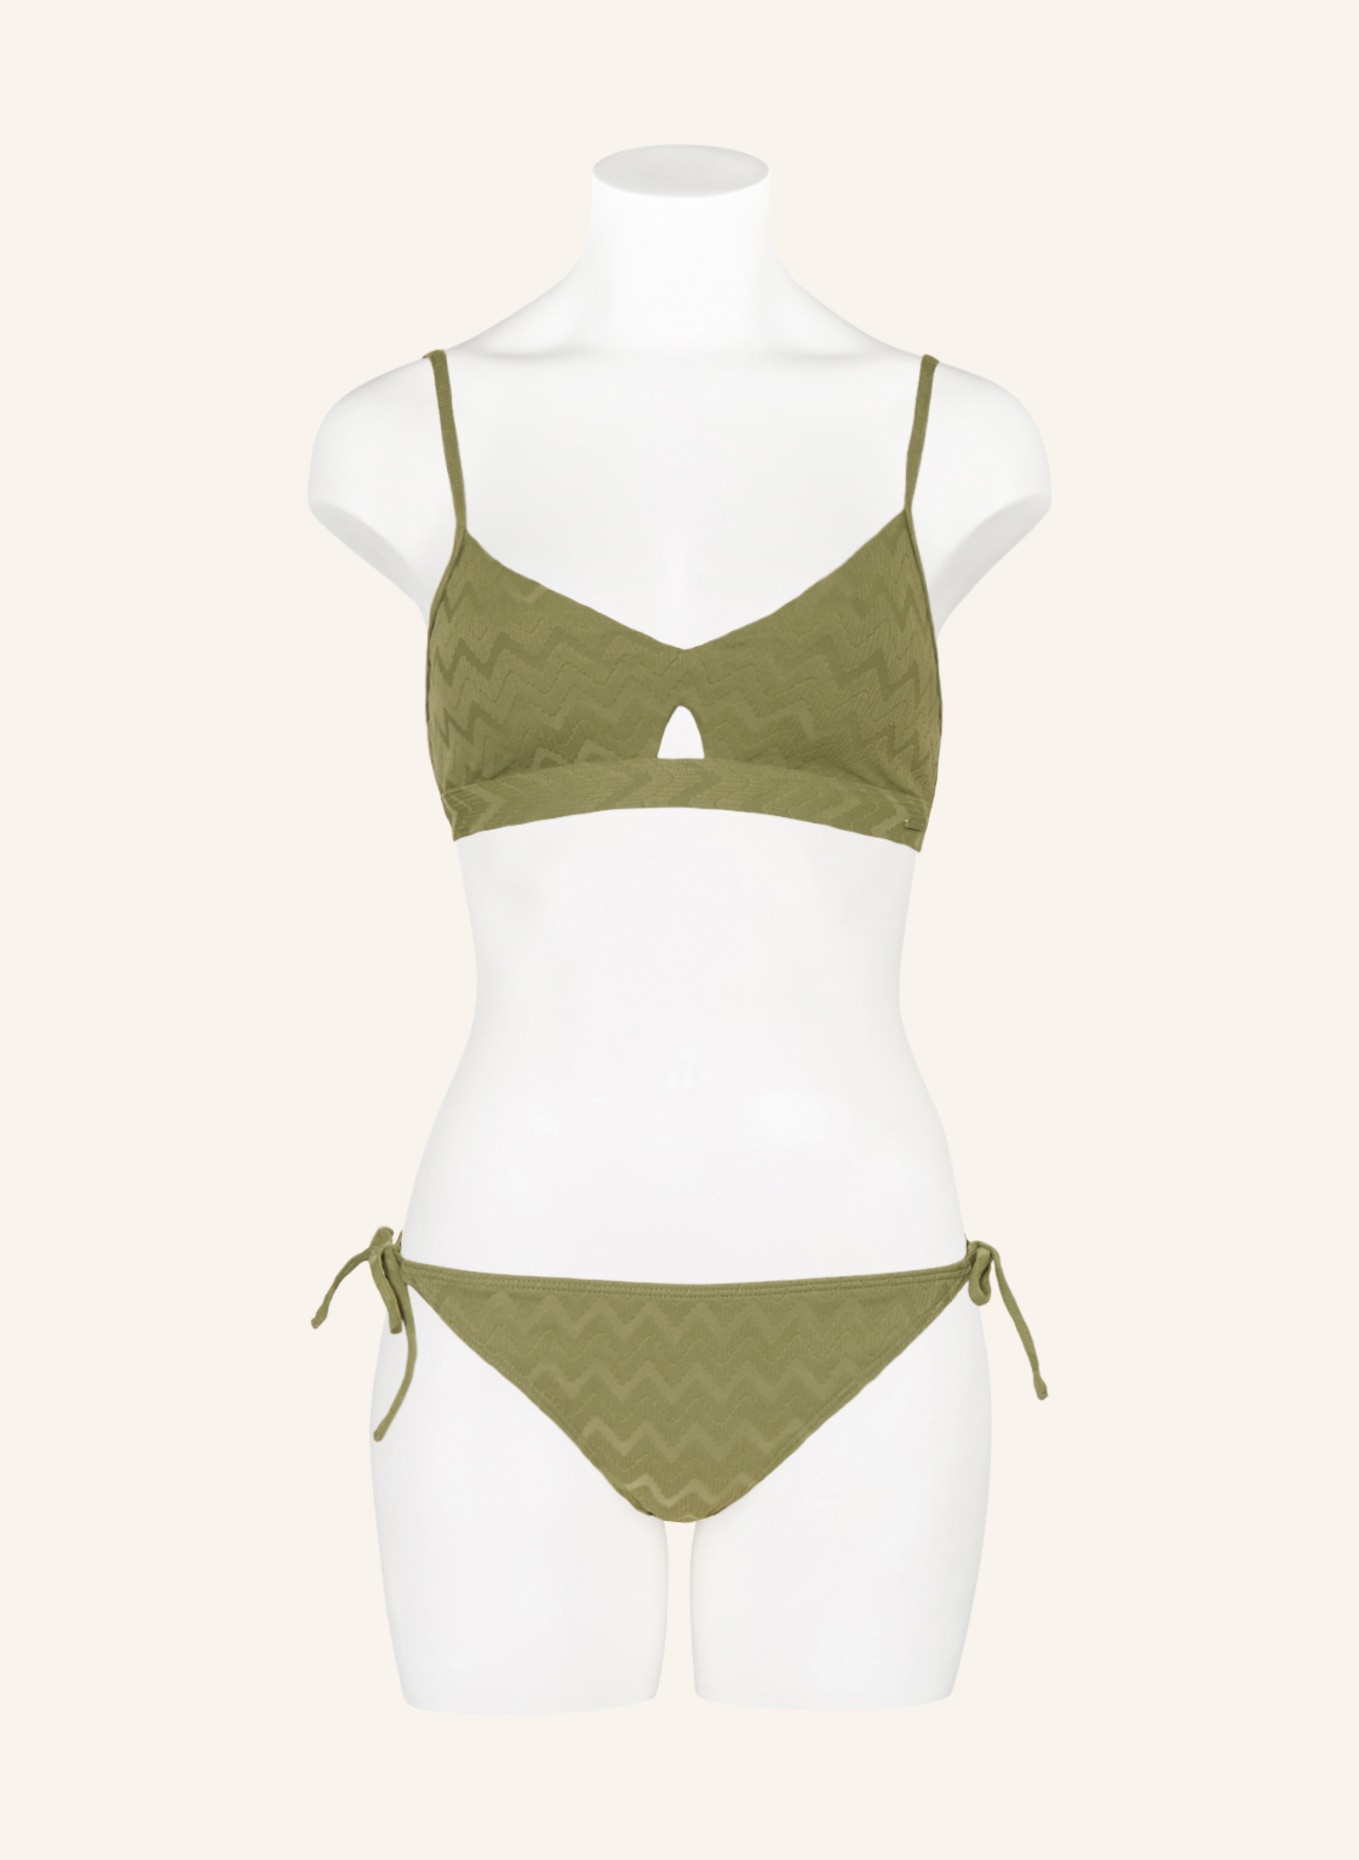 ROXY Bralette-Bikini-Top CURRENT COOLNESS, Farbe: OLIV (Bild 2)